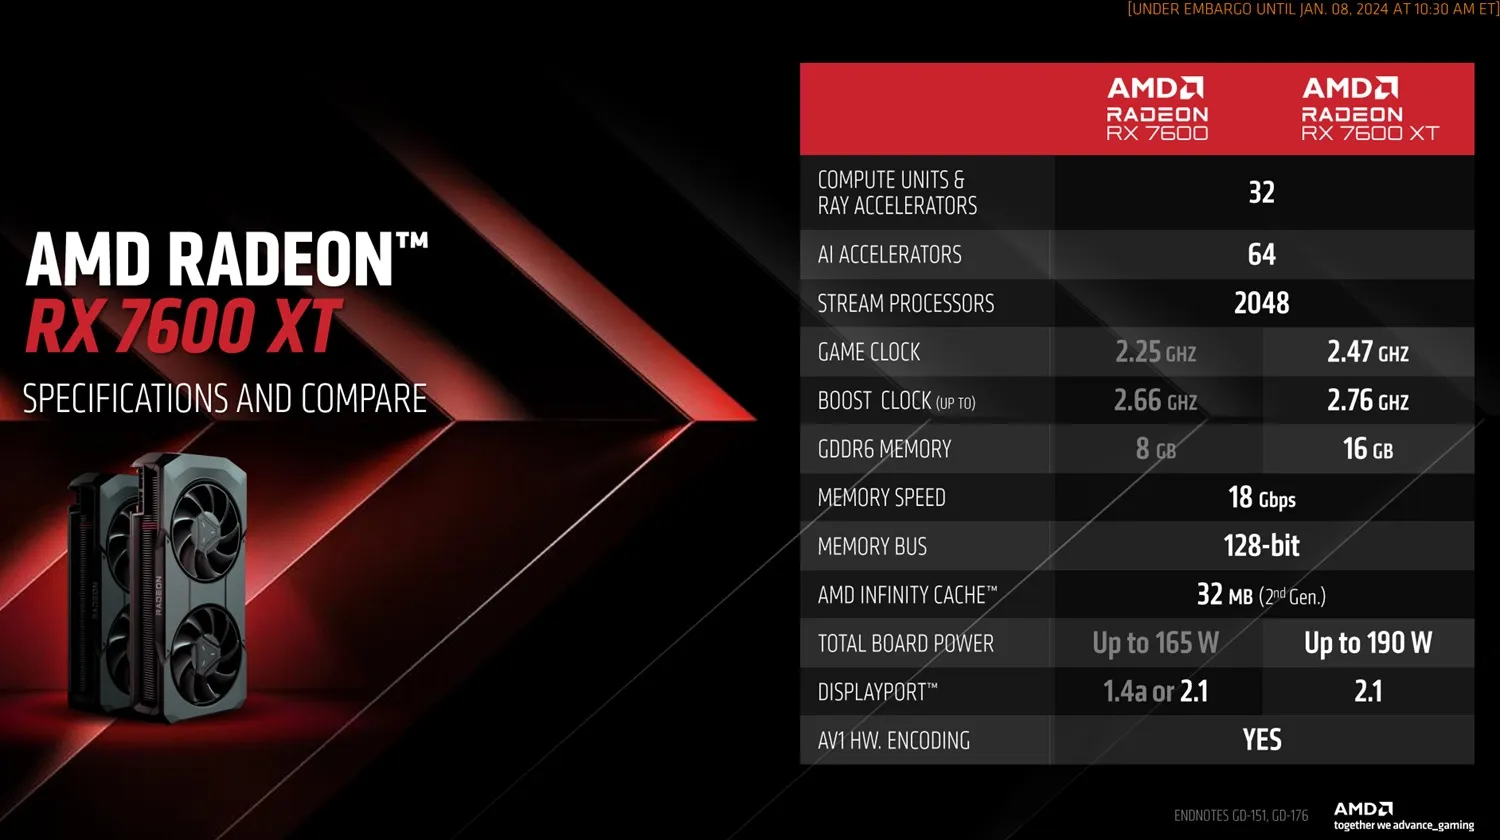 Especificações da AMD RX 7600 XT.